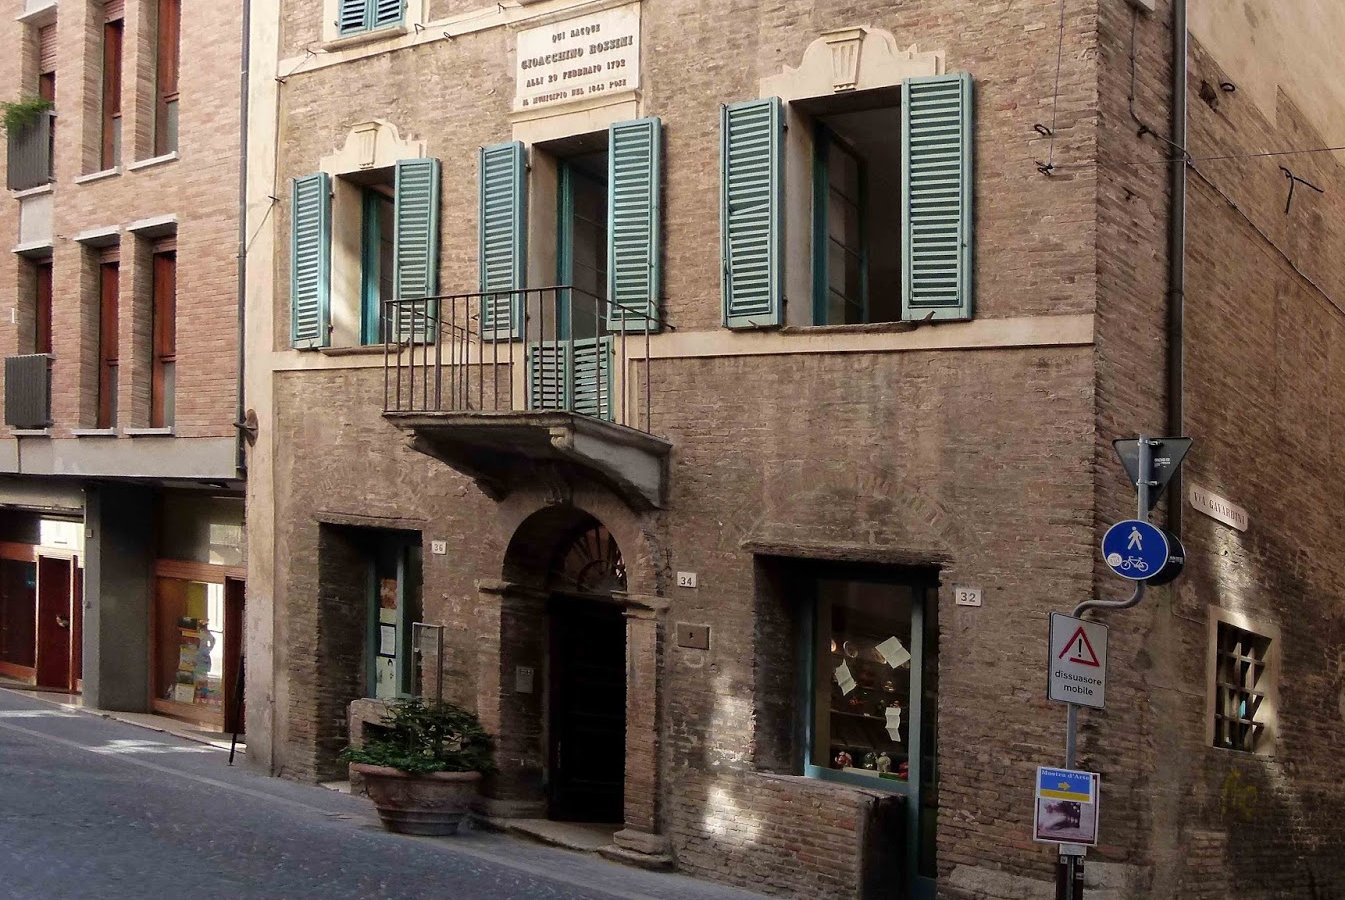  Rossini's birth house 